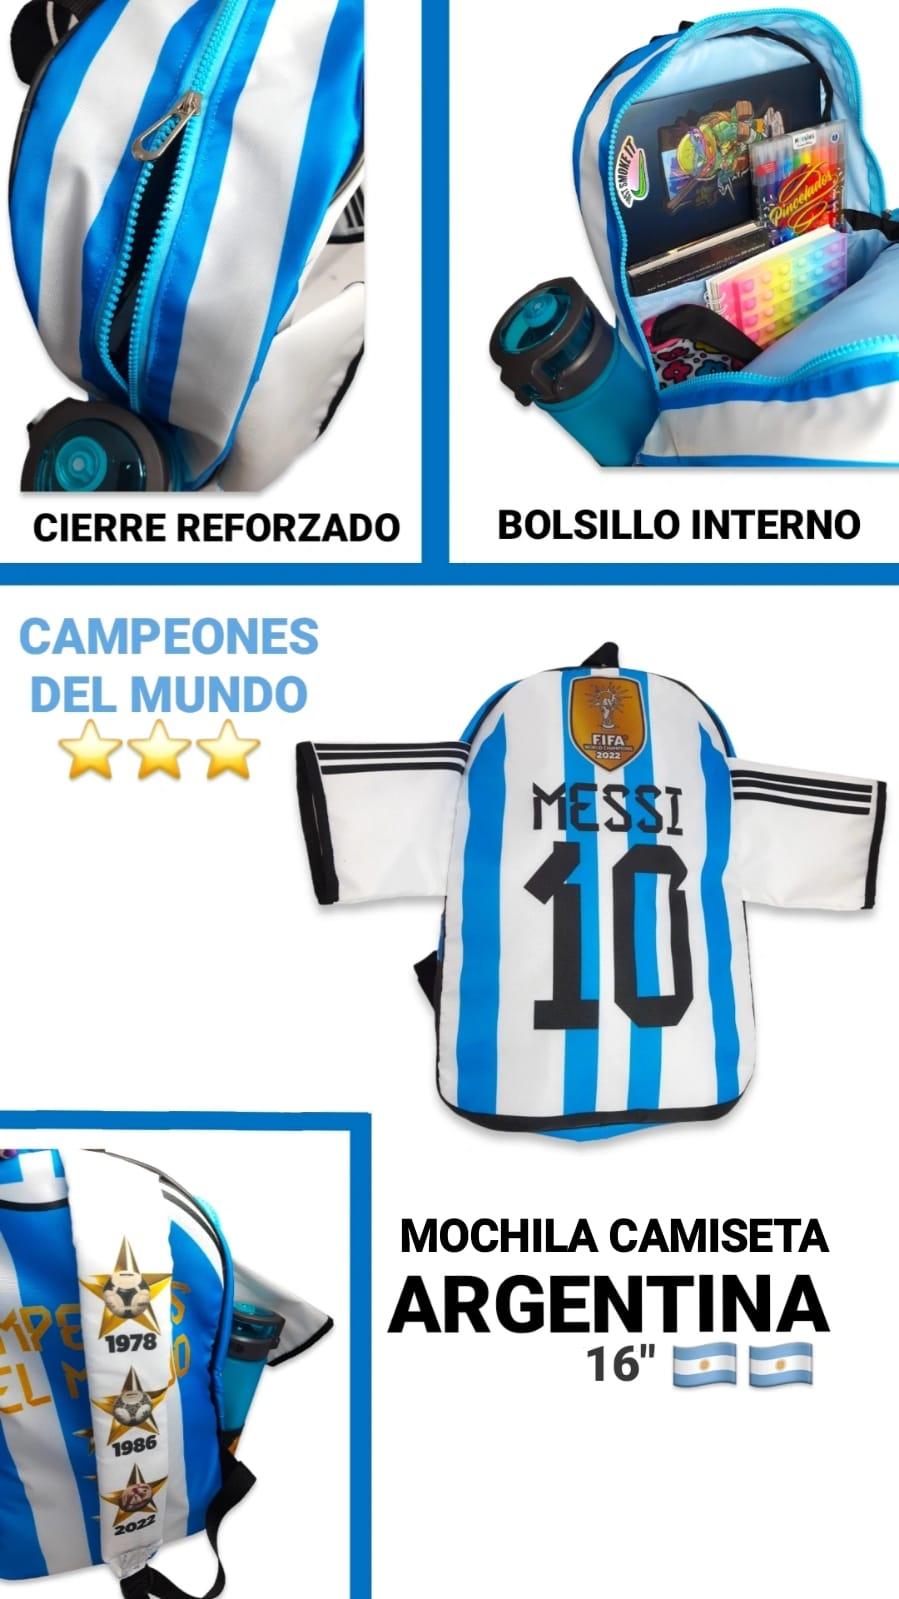 Mochila Camiseta Argentina 16